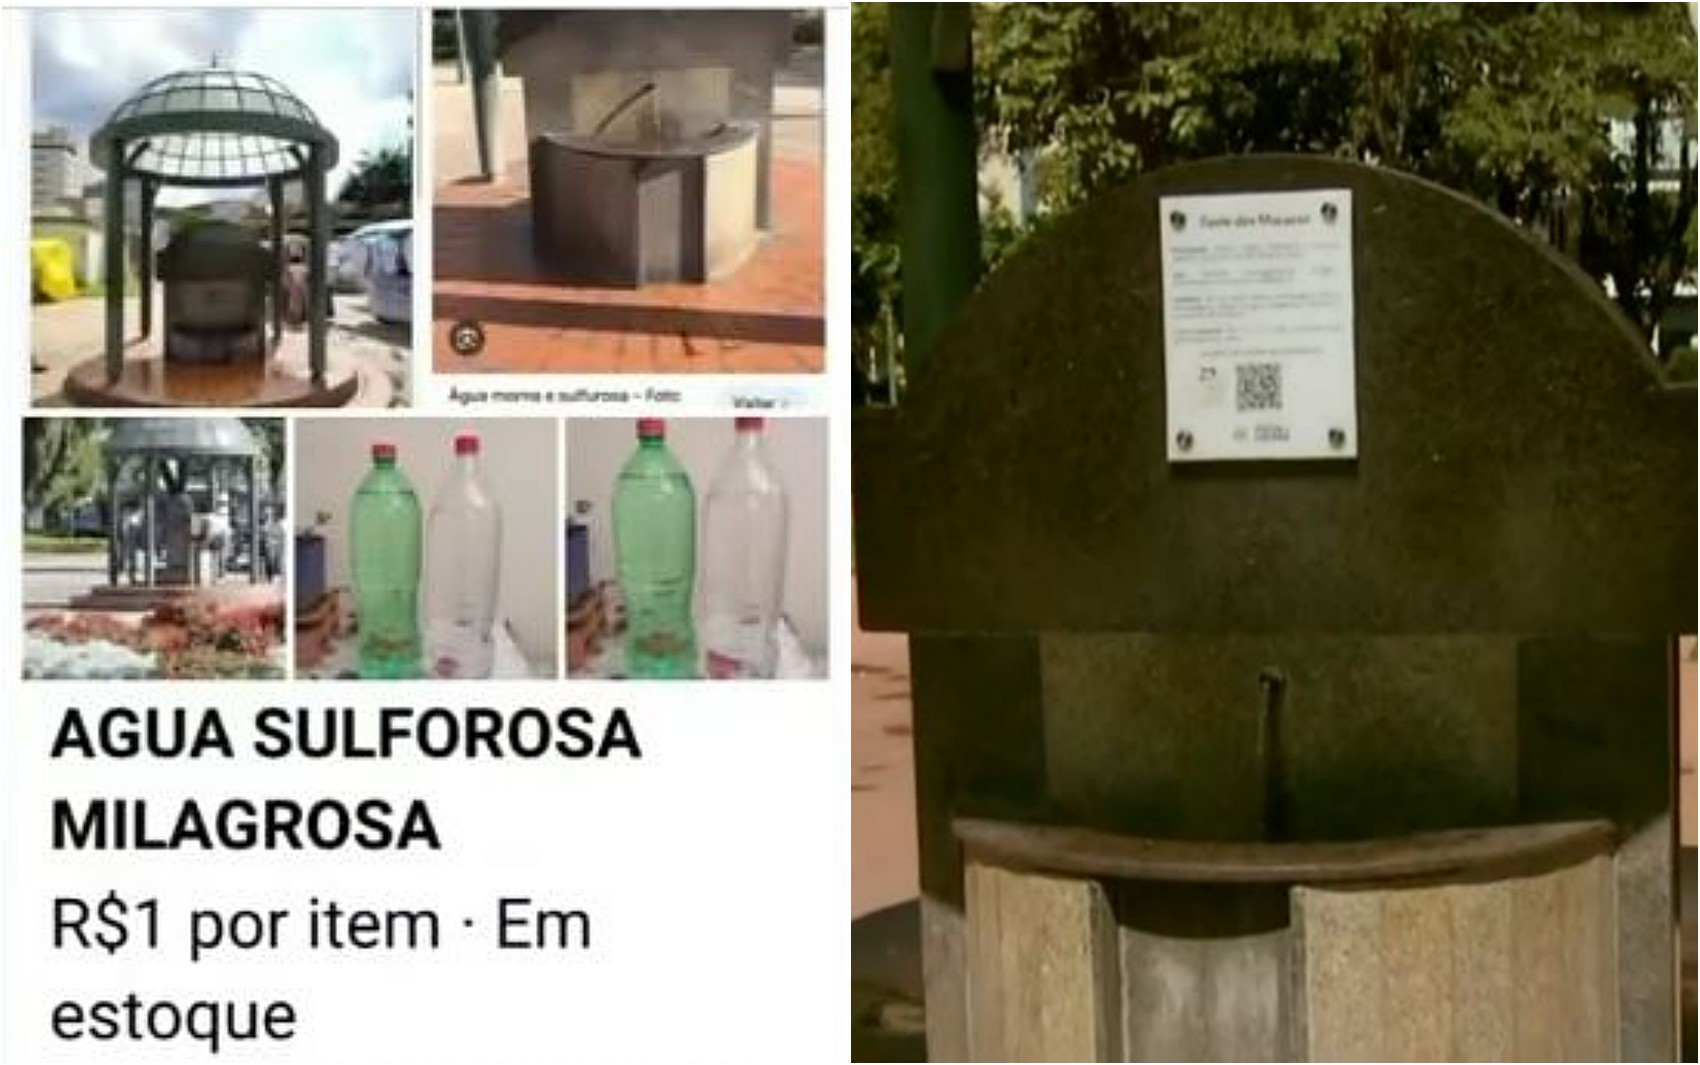 Prefeitura registra boletim de ocorrência após identificar venda ilegal de águas termais em MG